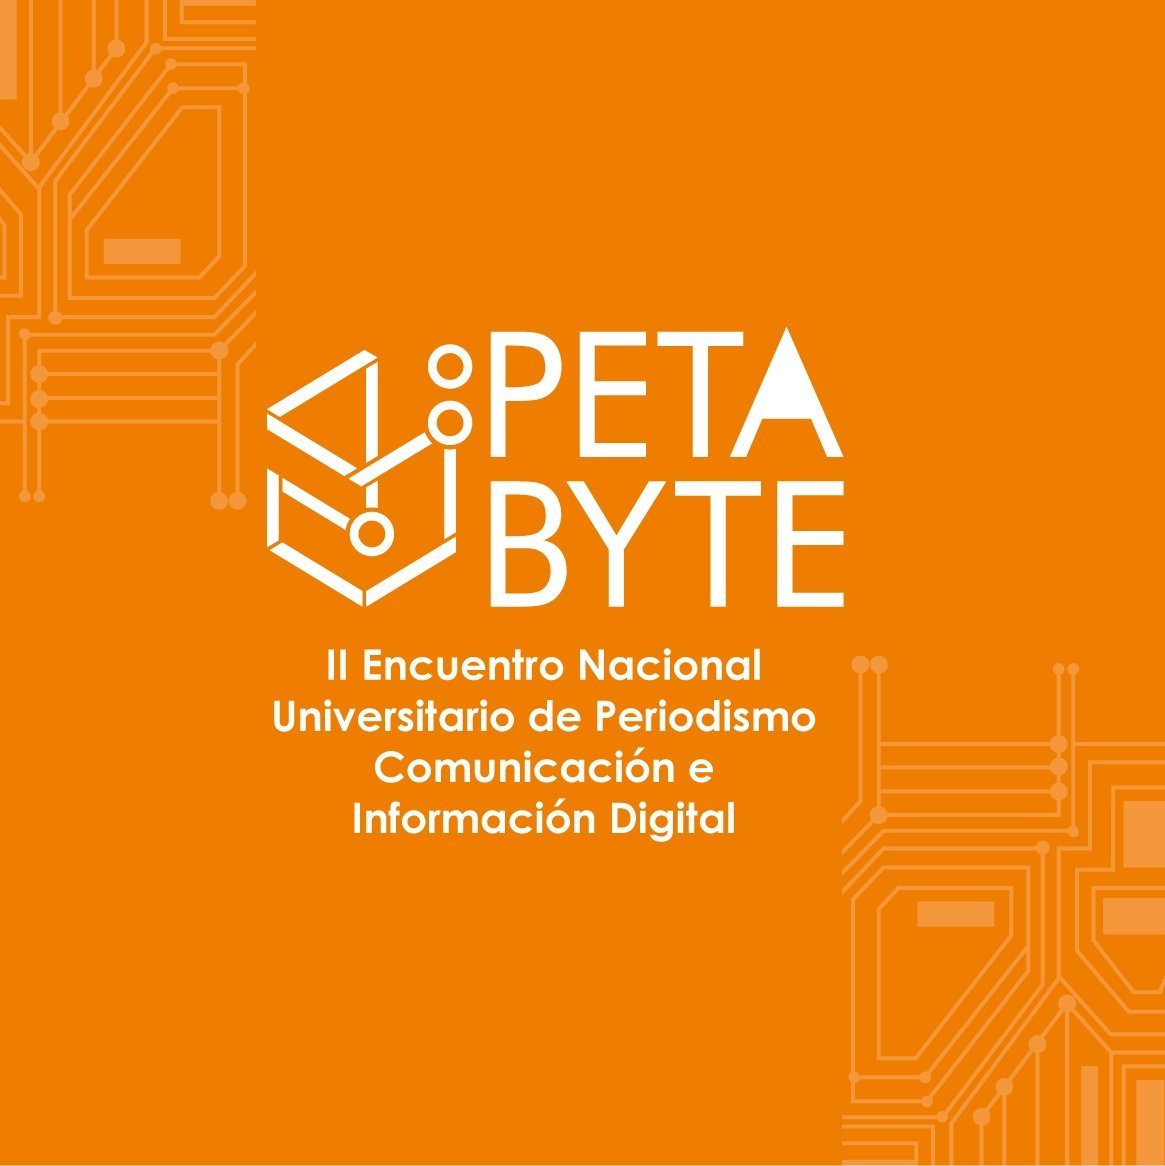 Petabyte